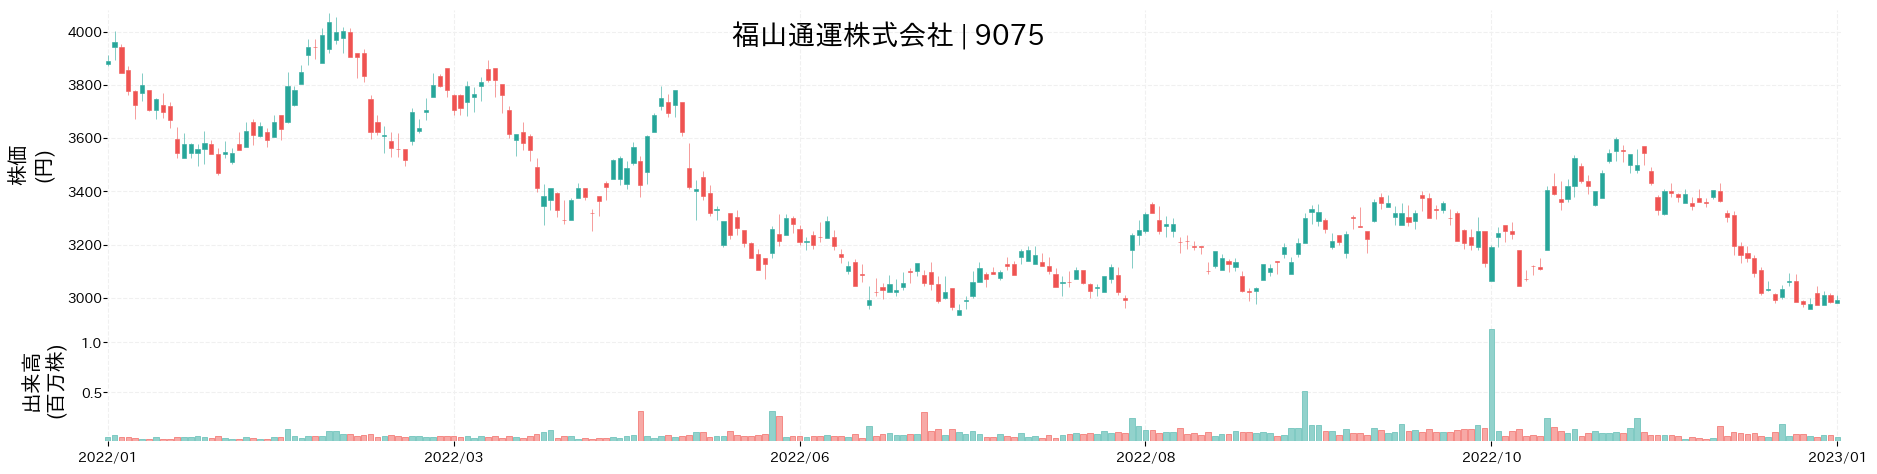 福山通運の株価推移(2022)